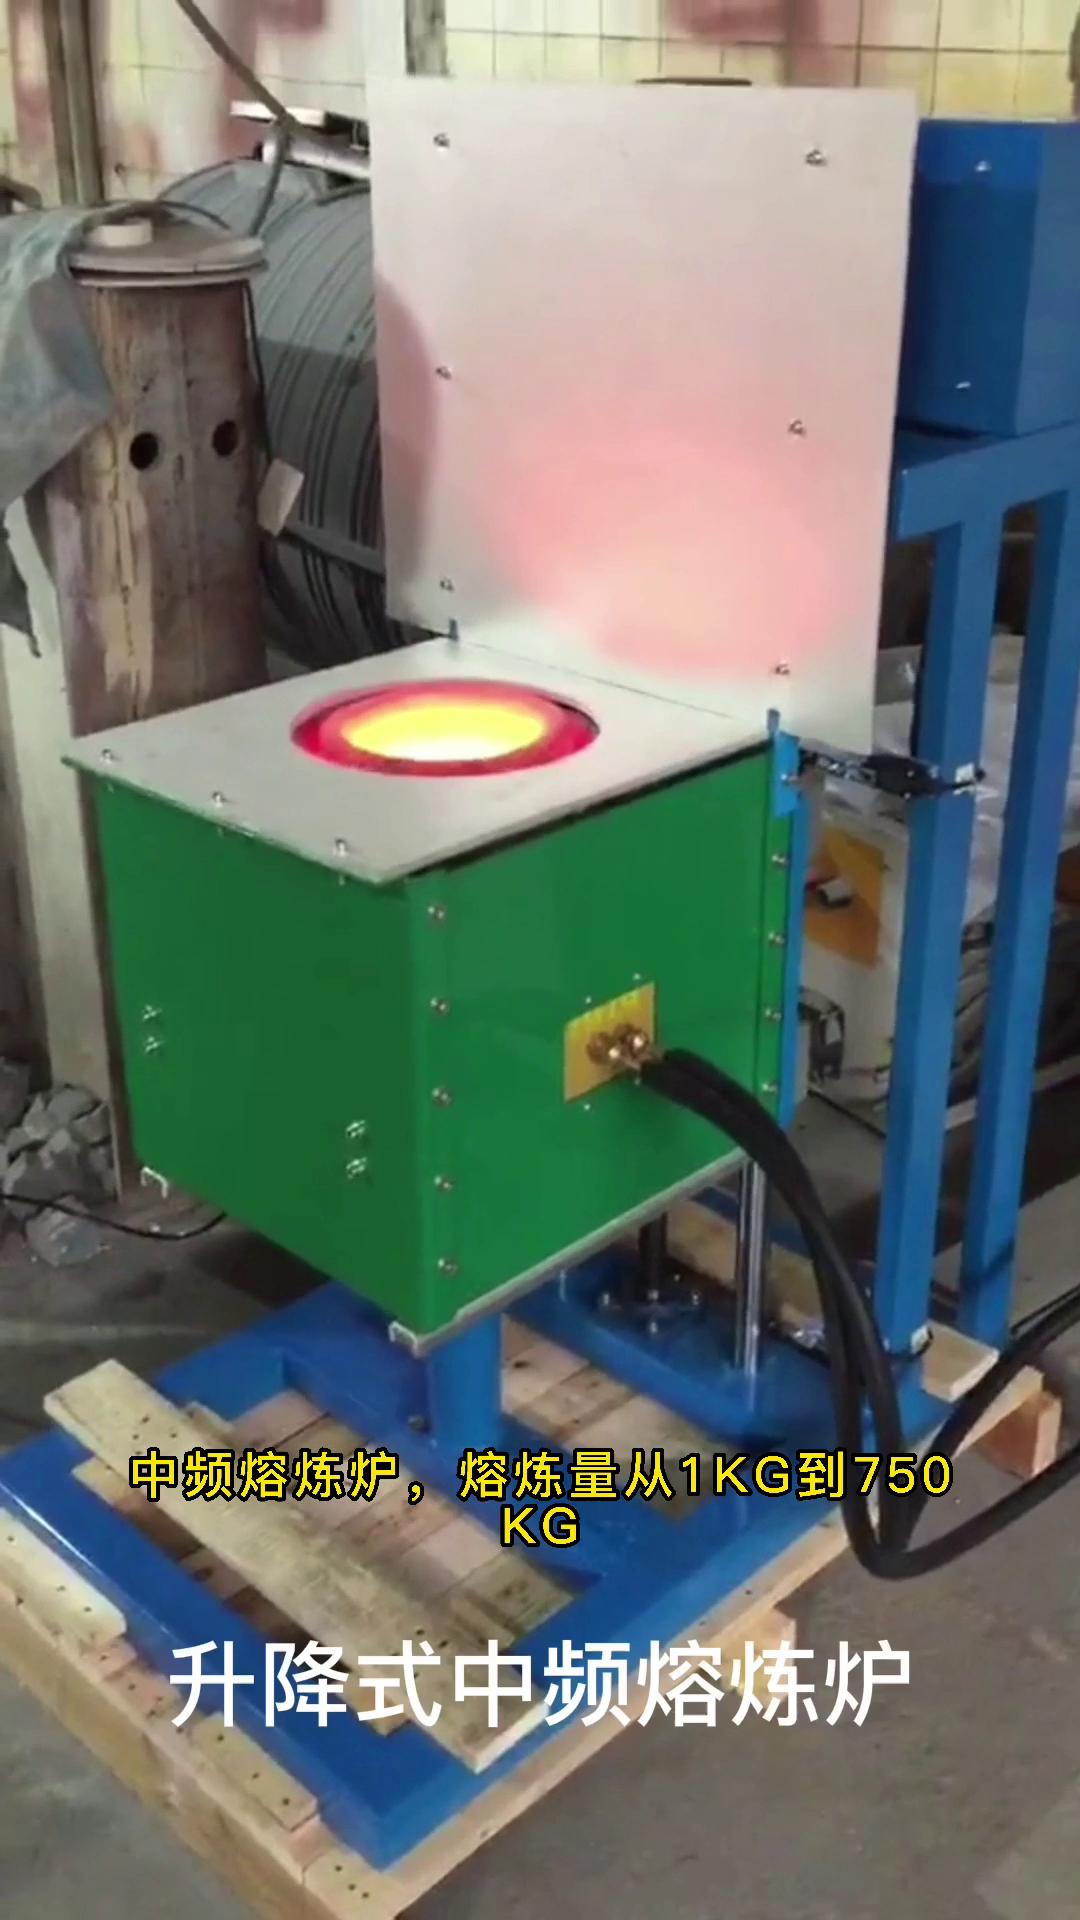 电动升降式中频熔炼炉 金属融化设备 温度可达2000度 您想用它熔炼什么金属